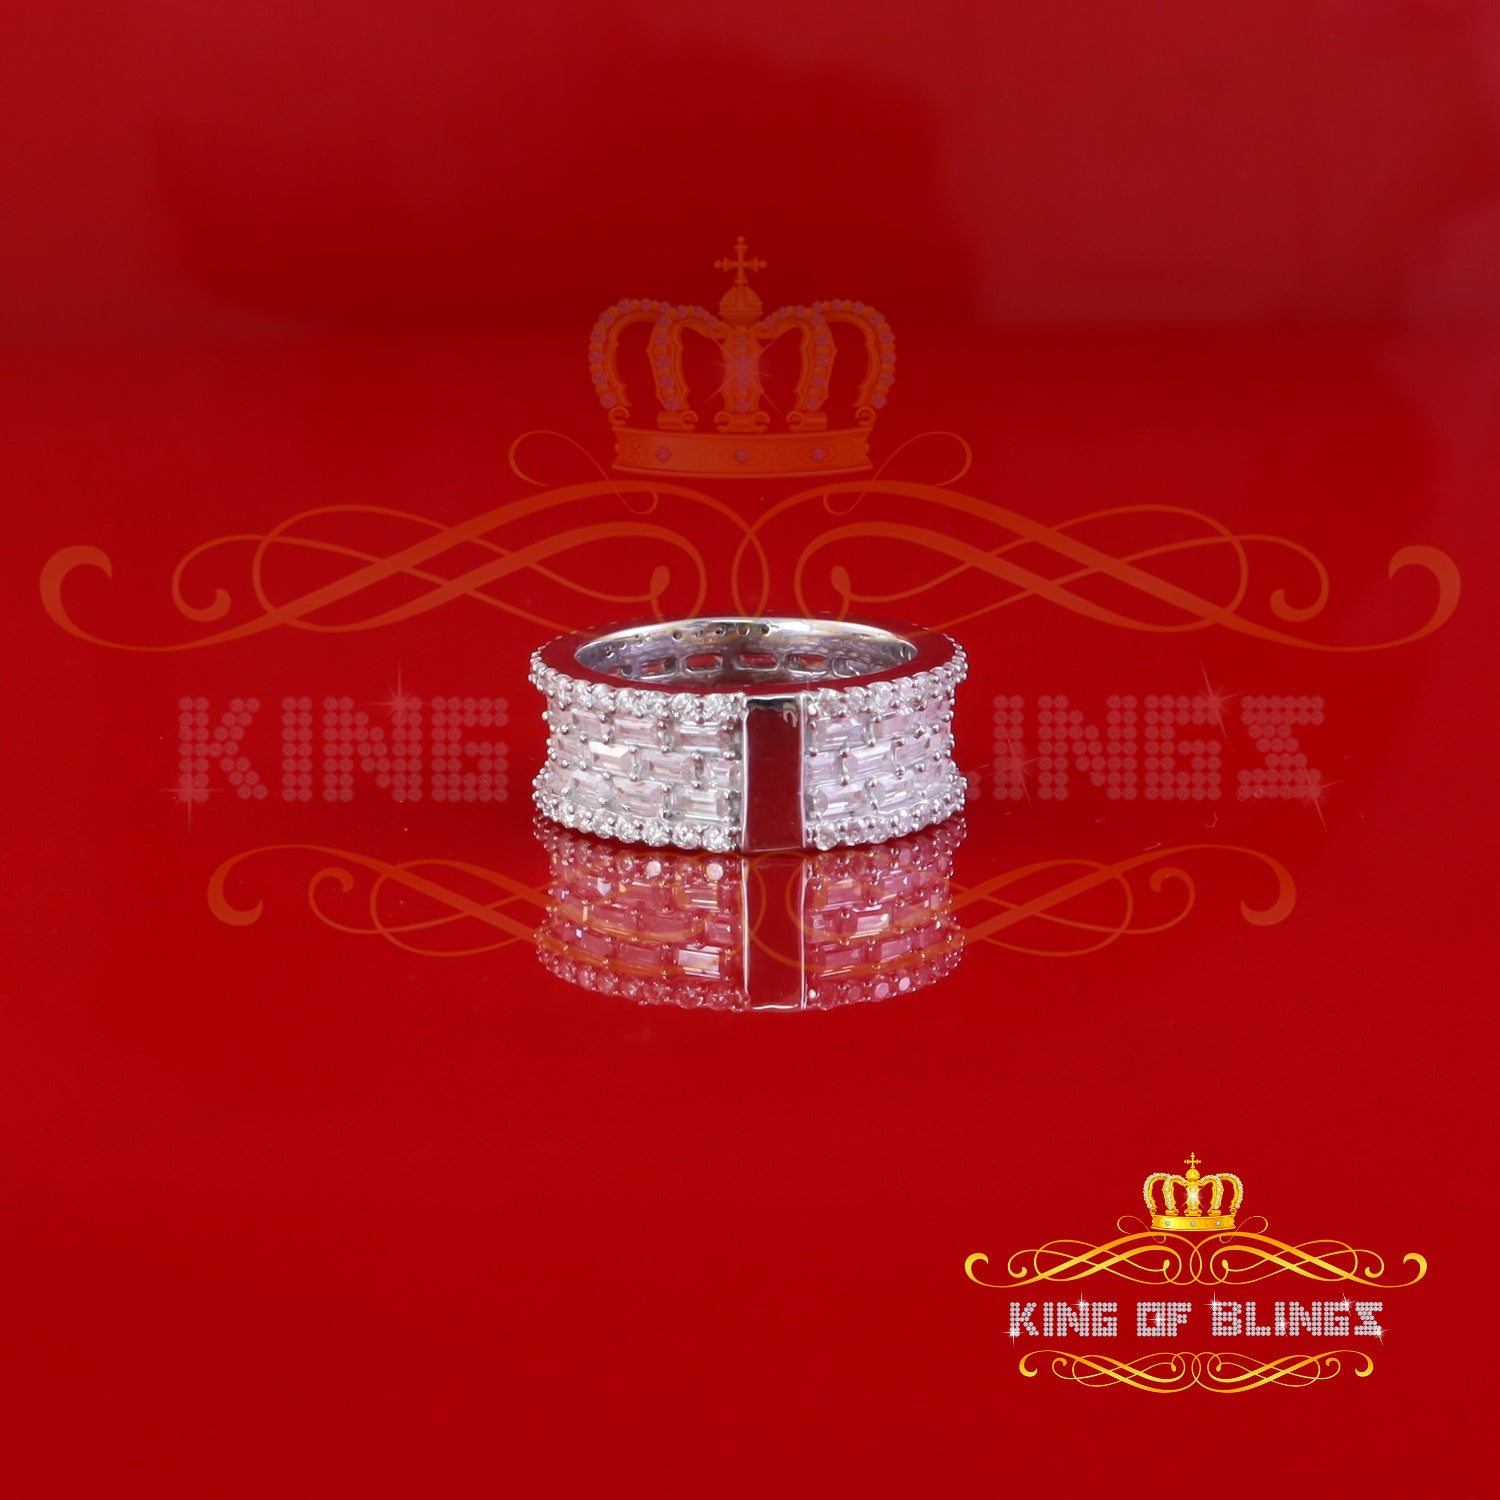 King of Bling's White Round Band Sterling Silver 3.50ct VVS 'D' Moissanite Rings SZ 7 for Women KING OF BLINGS